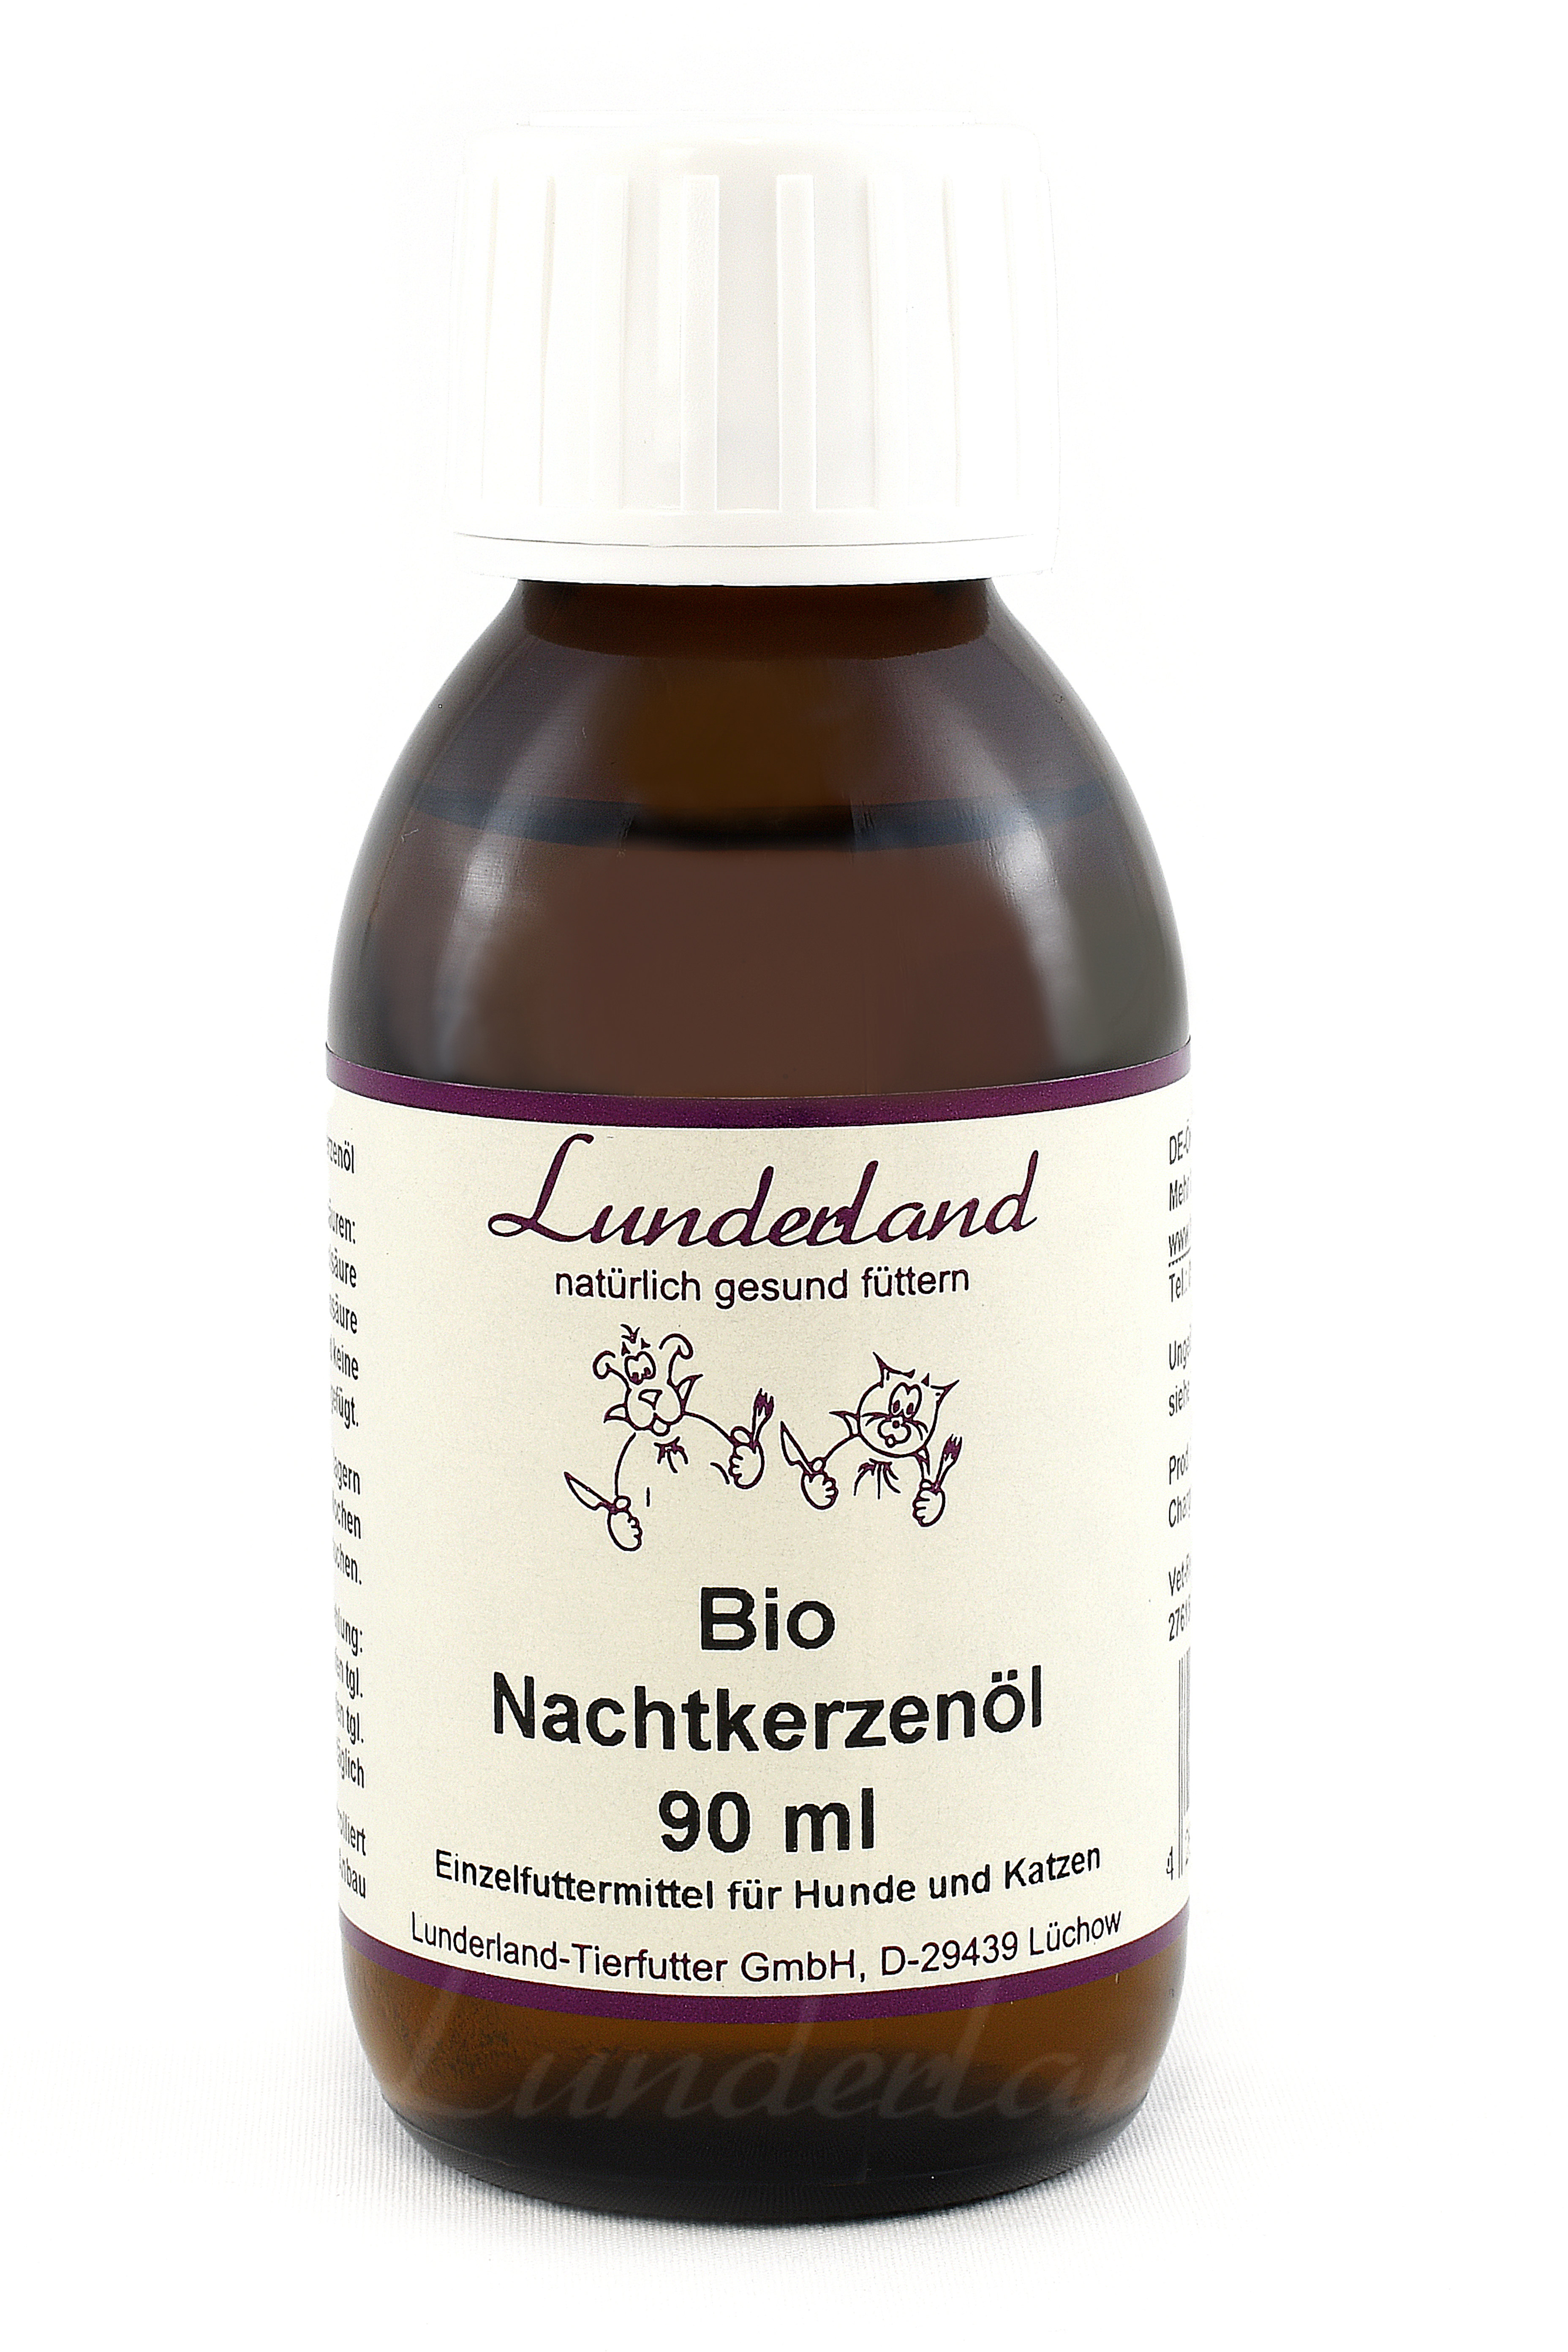 Lunderland Bio Nachtkerzenöl